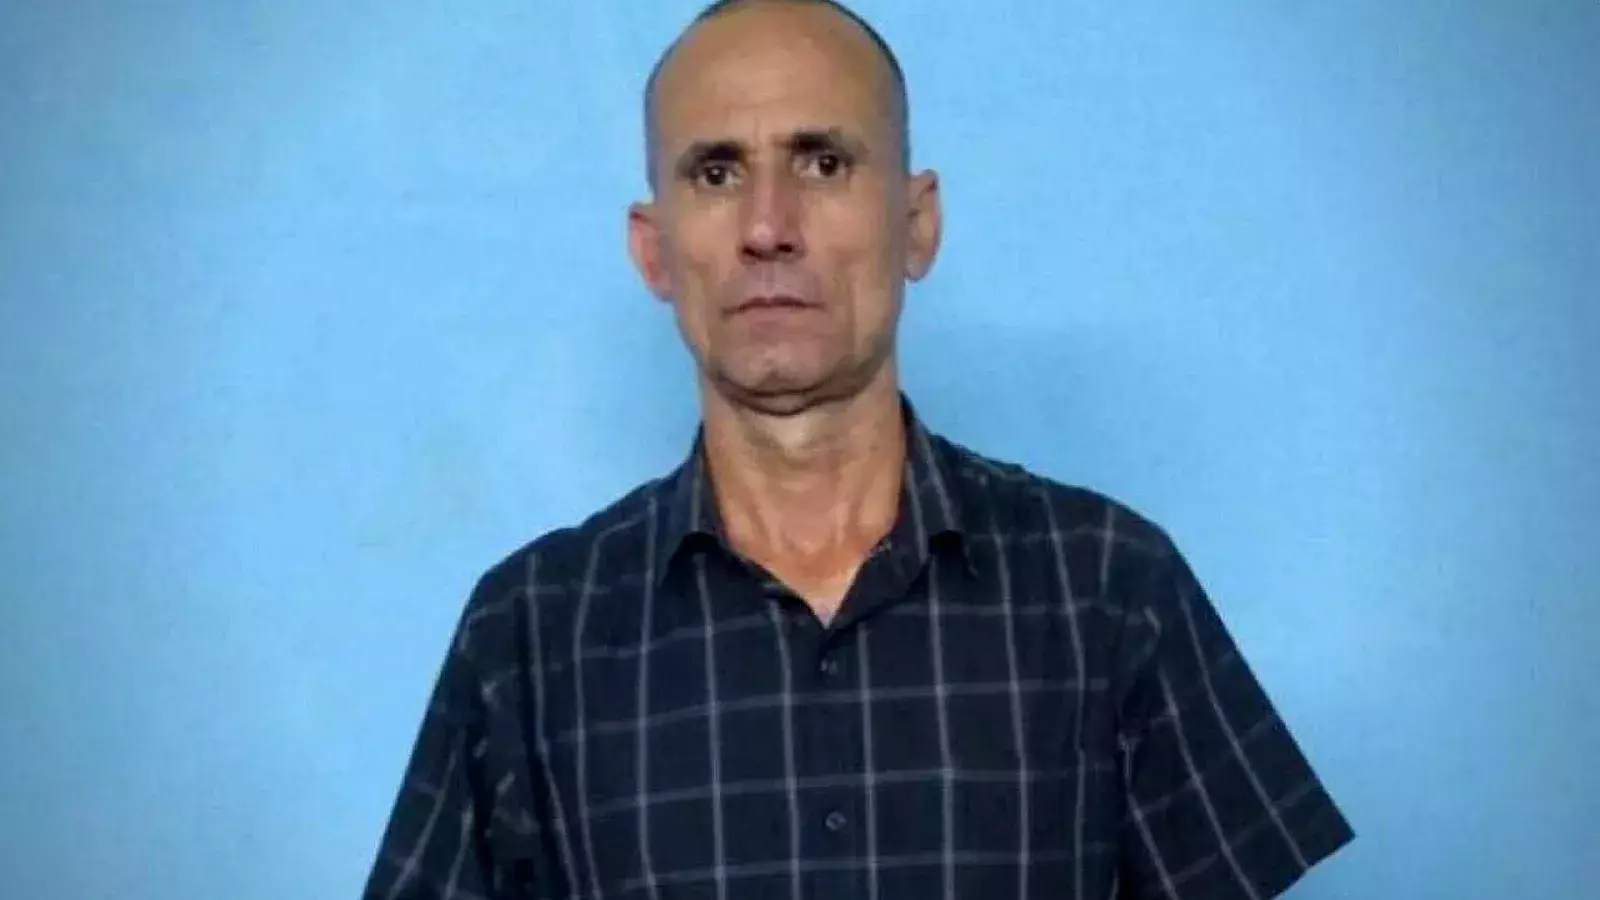 José Daniel Ferrer, preso de cocniencia cubano